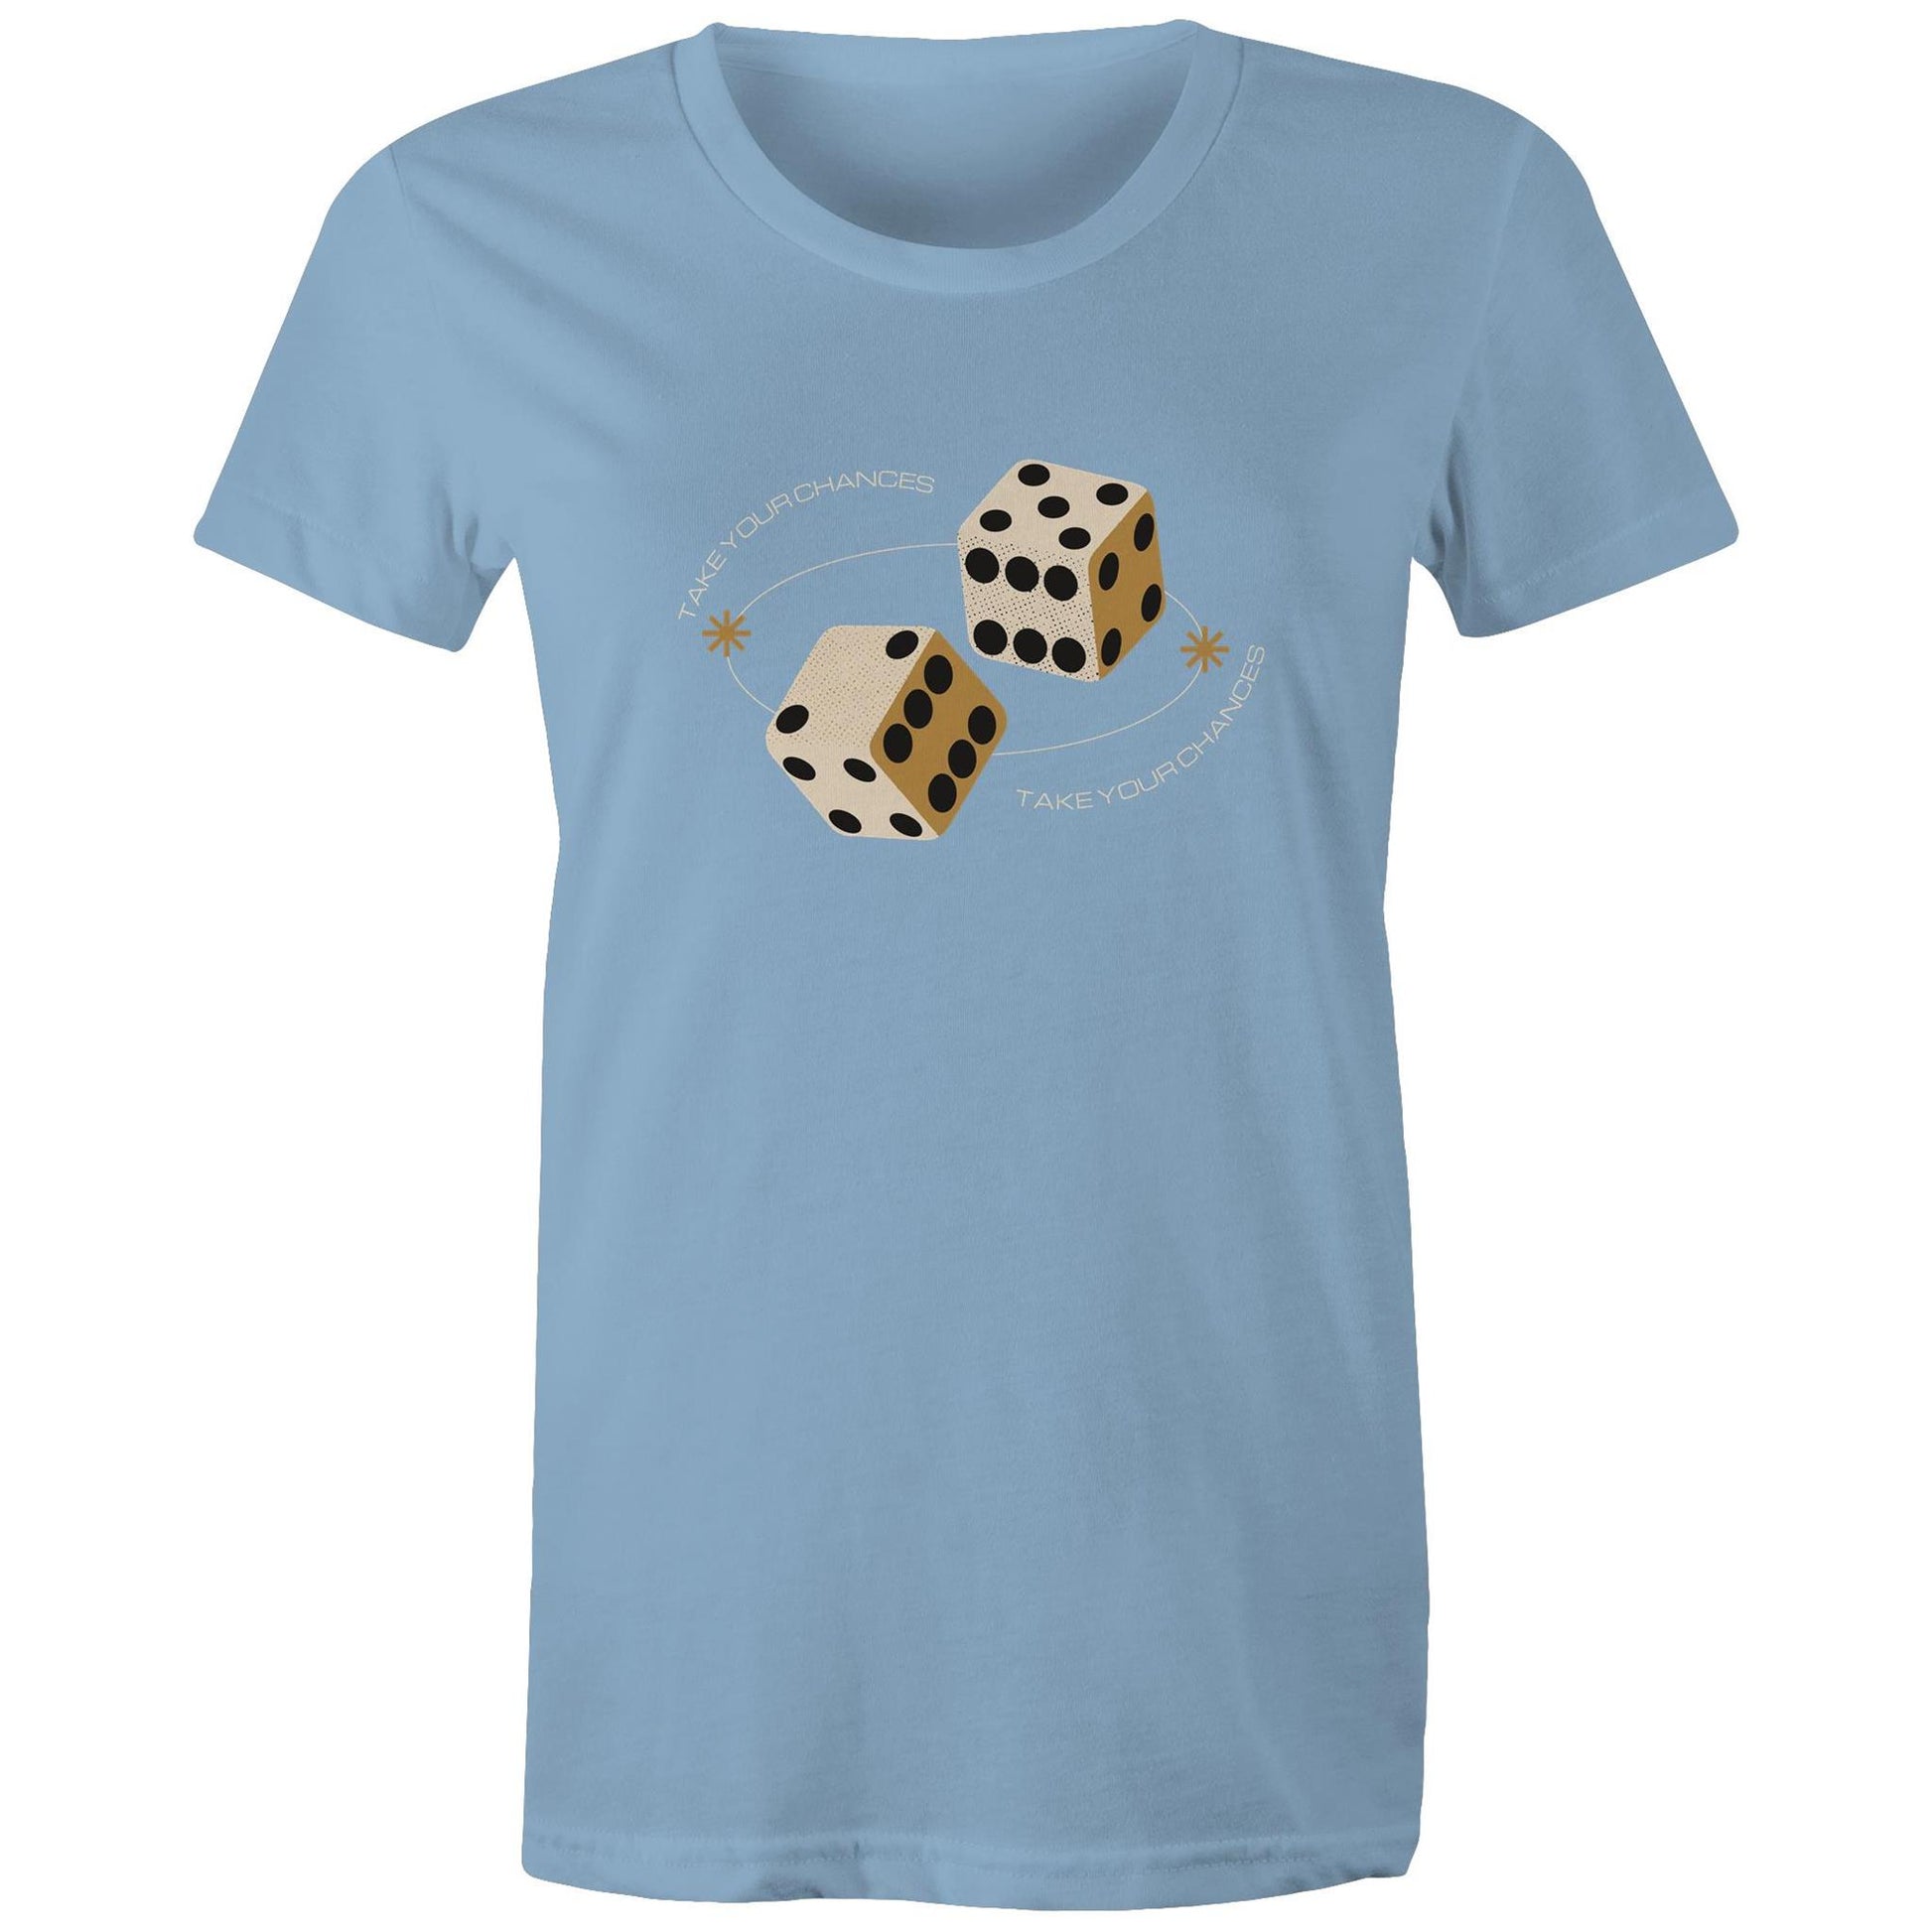 Dice, Take Your Chances - Womens T-shirt Carolina Blue Womens T-shirt Games